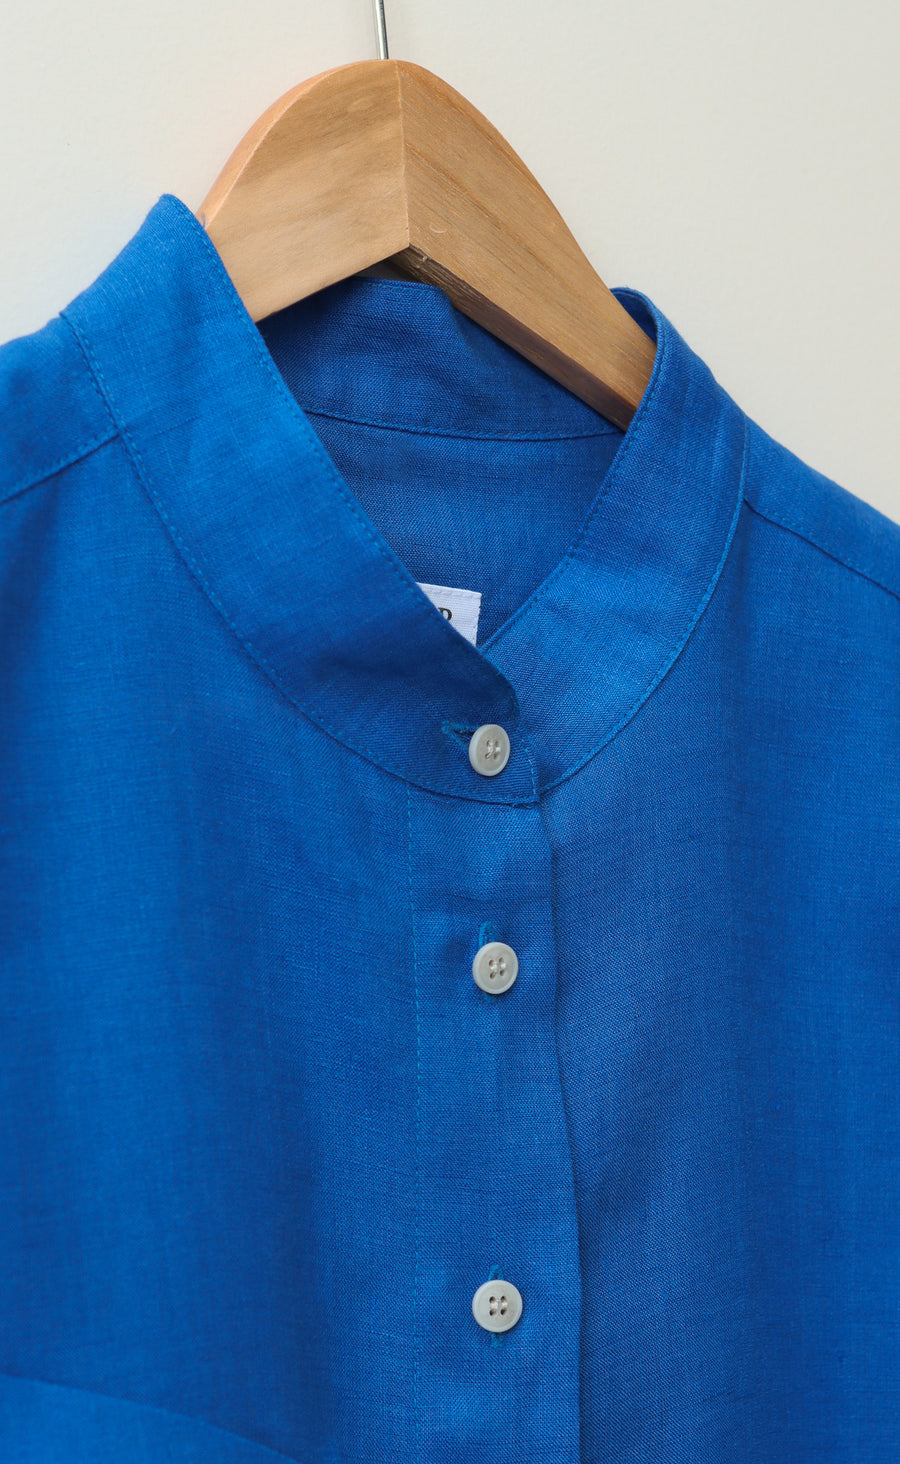 The Friend - Wayward Fit Tunic - Cobalt Blue 100% Linen